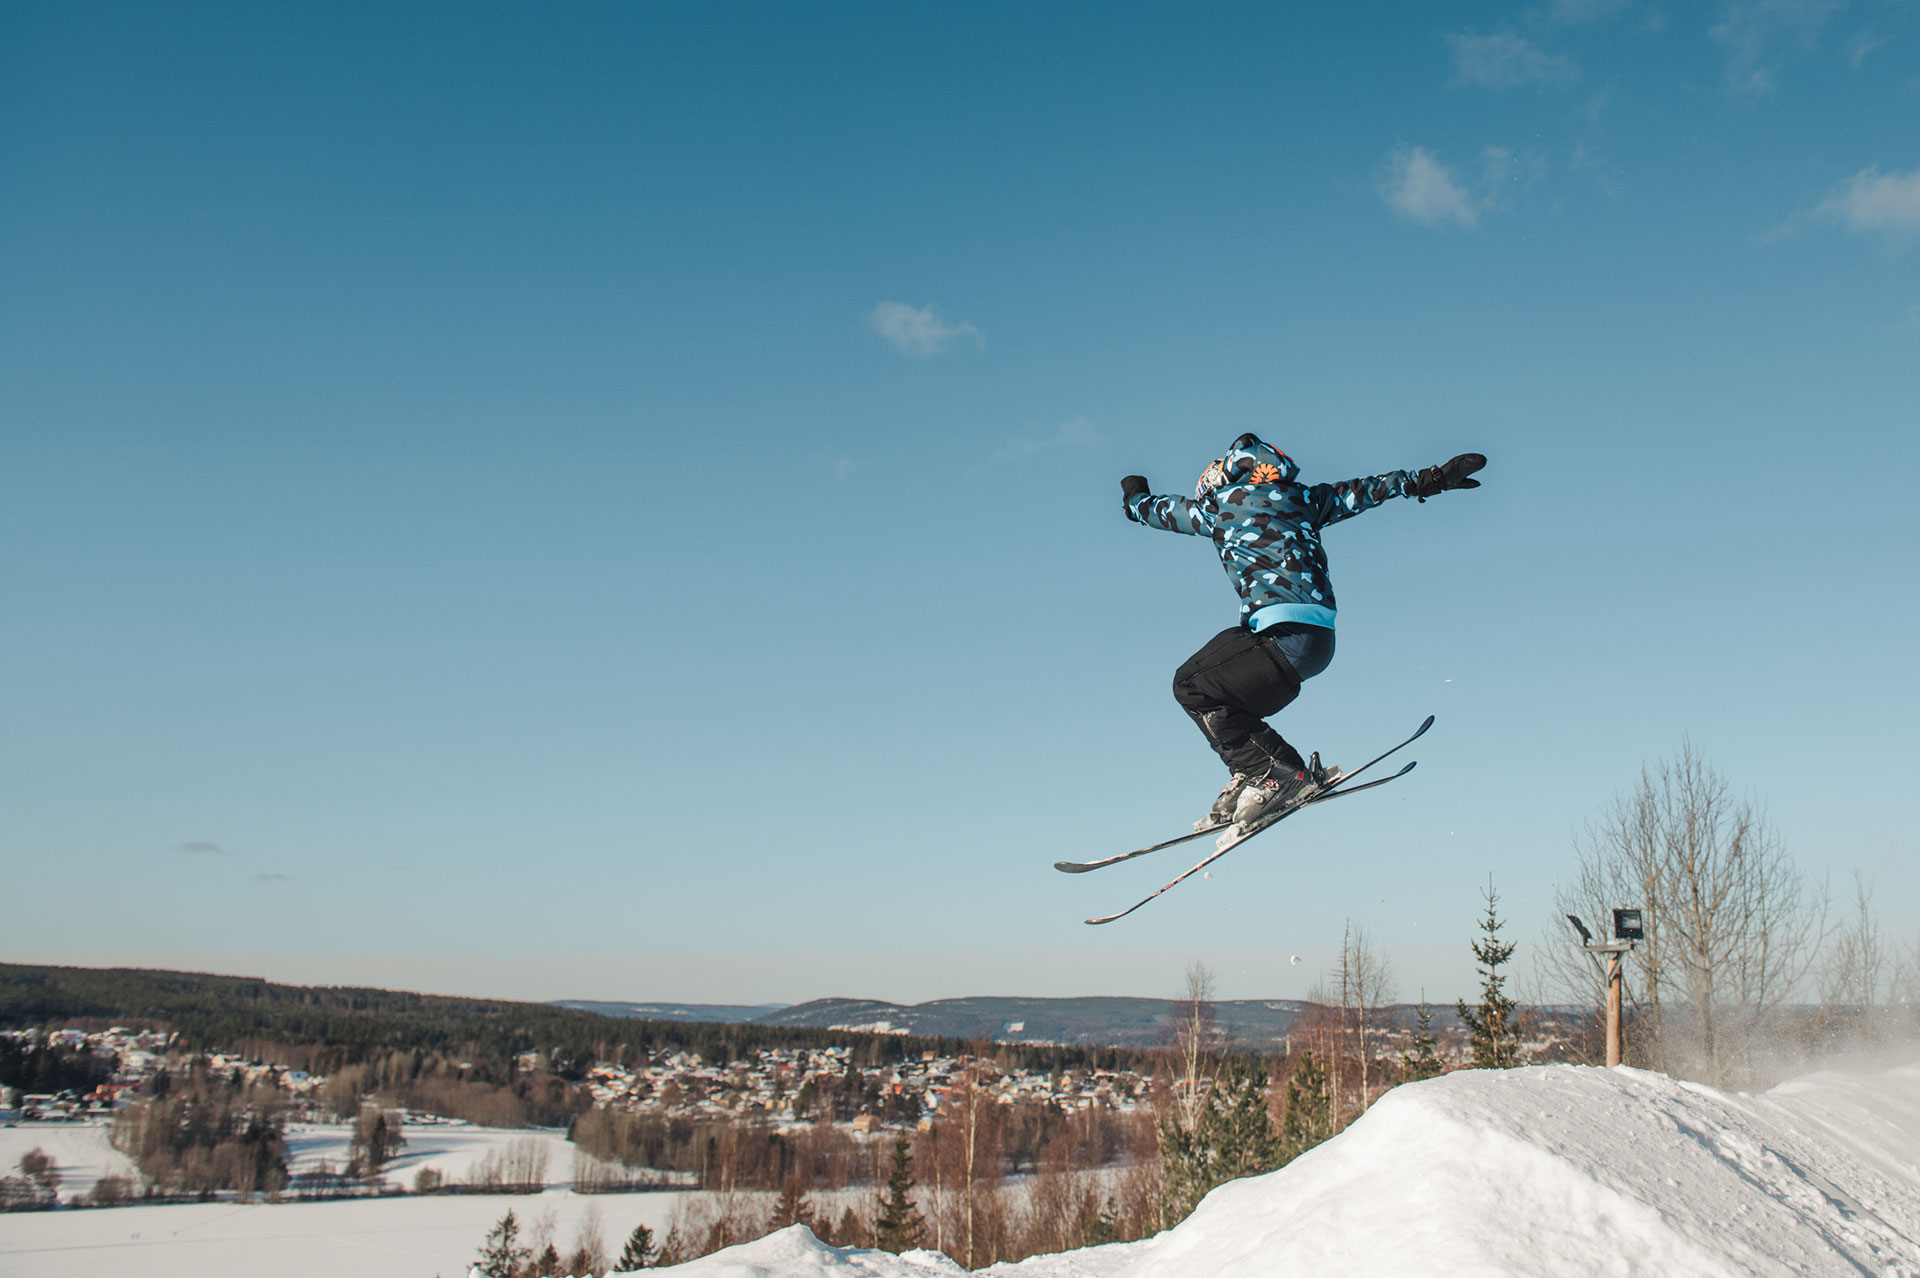 Fotografi av en kille som hoppar med sina skidor i en slalombacke.